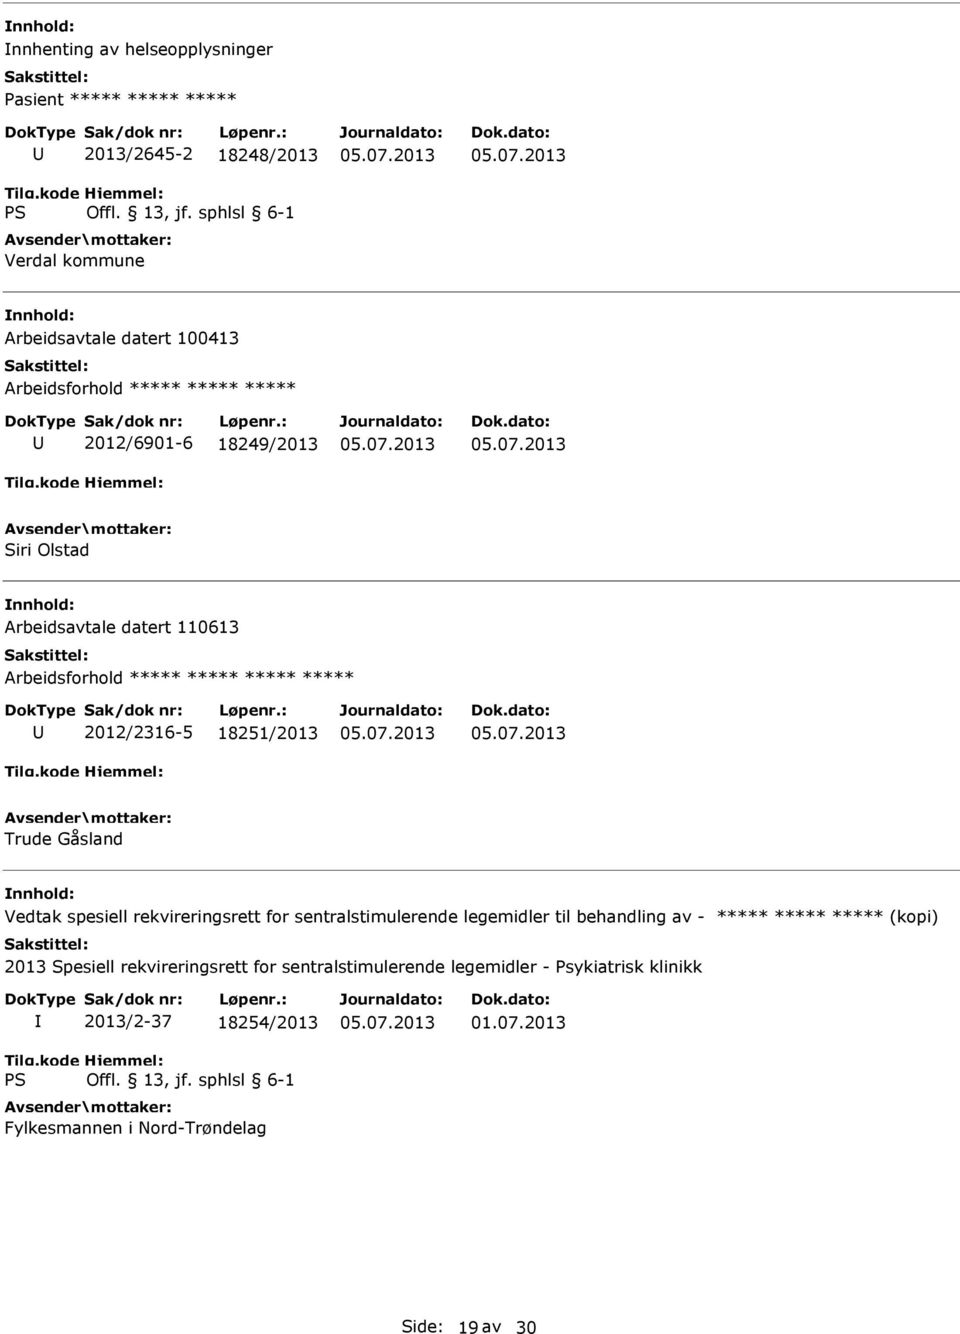 18251/2013 Trude Gåsland Vedtak spesiell rekvireringsrett for sentralstimulerende legemidler til behandling av - ***** *****